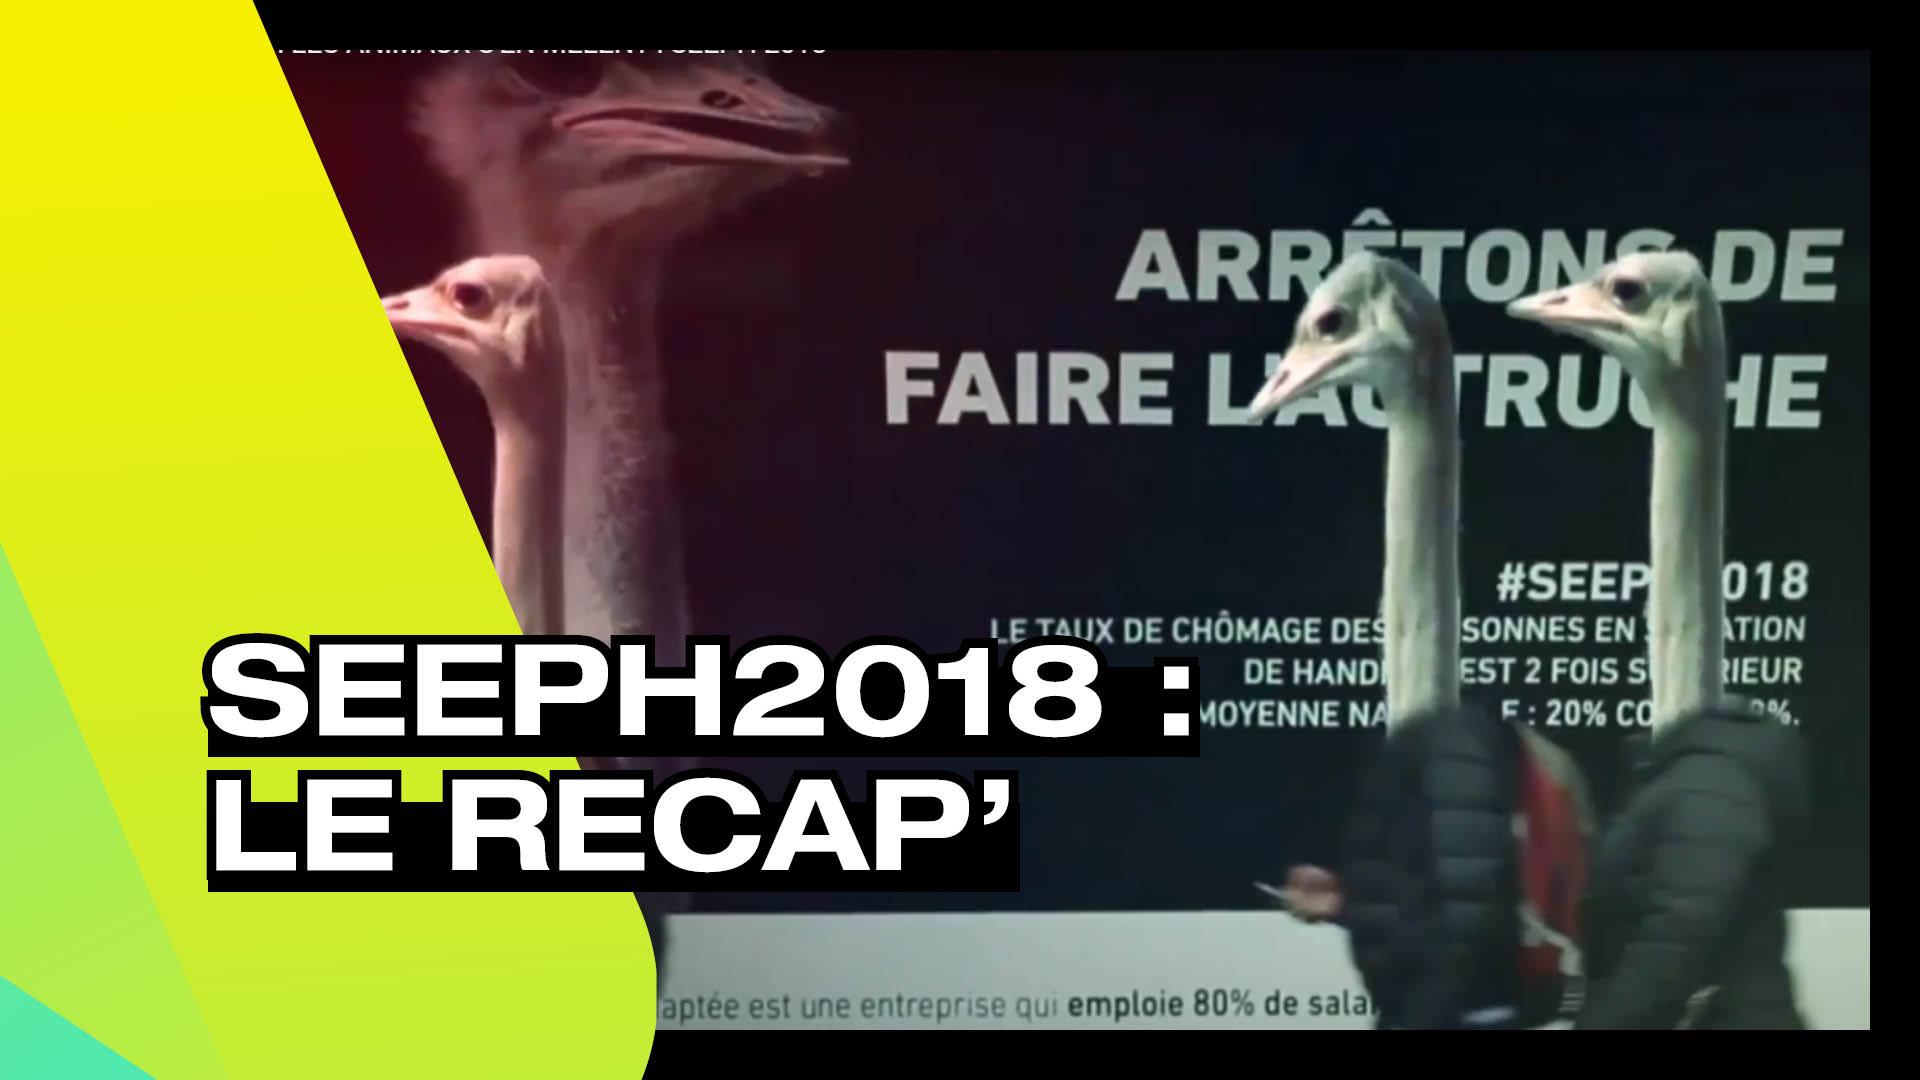 SEEPH 2018 - Le recap'